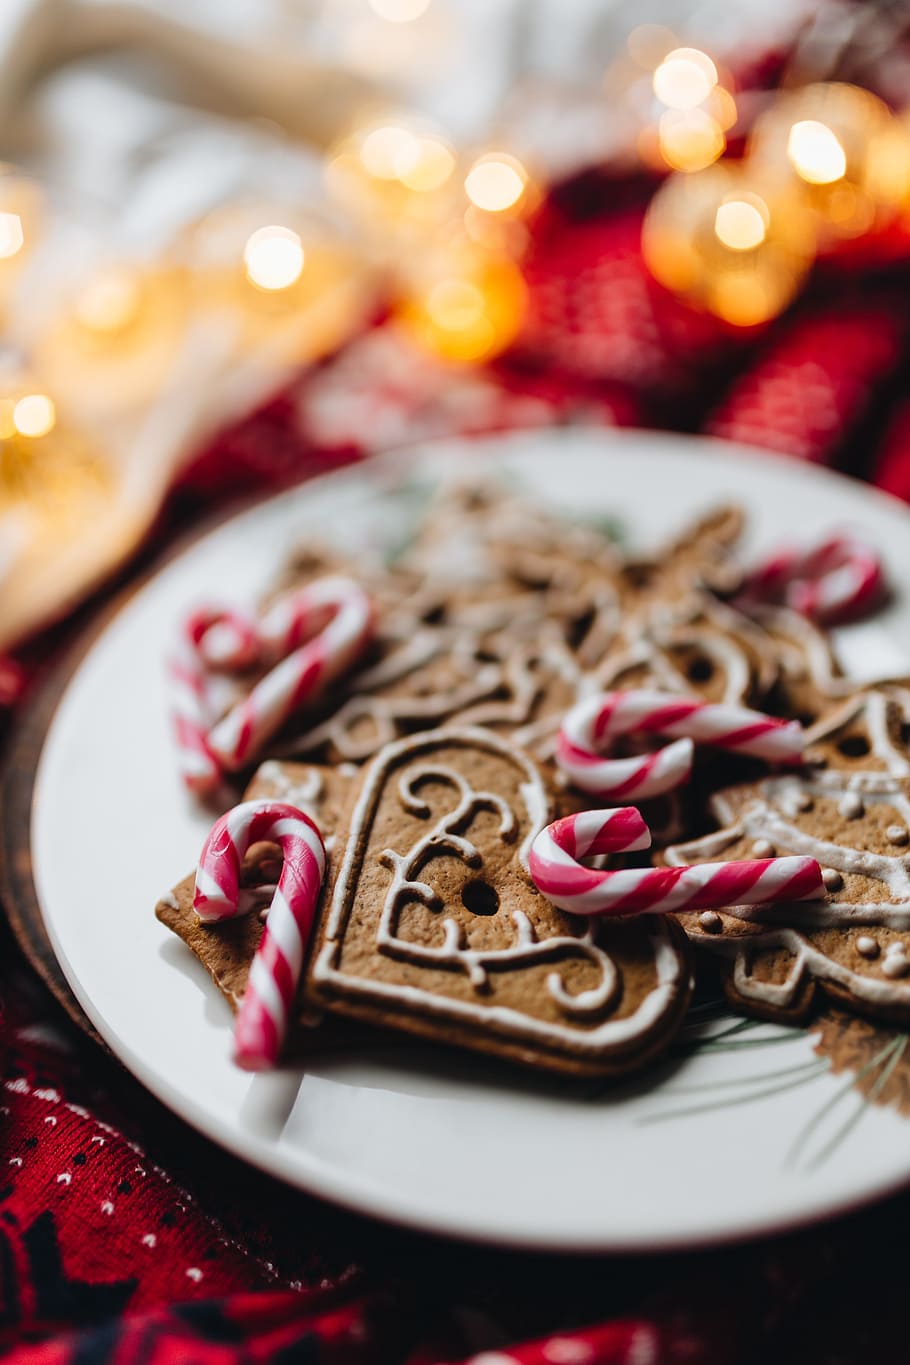 galletas de adorno de navidad, dulce, galleta, feriado, pan de jengibre, postre, navidad, festivo, diciembre, en el interior